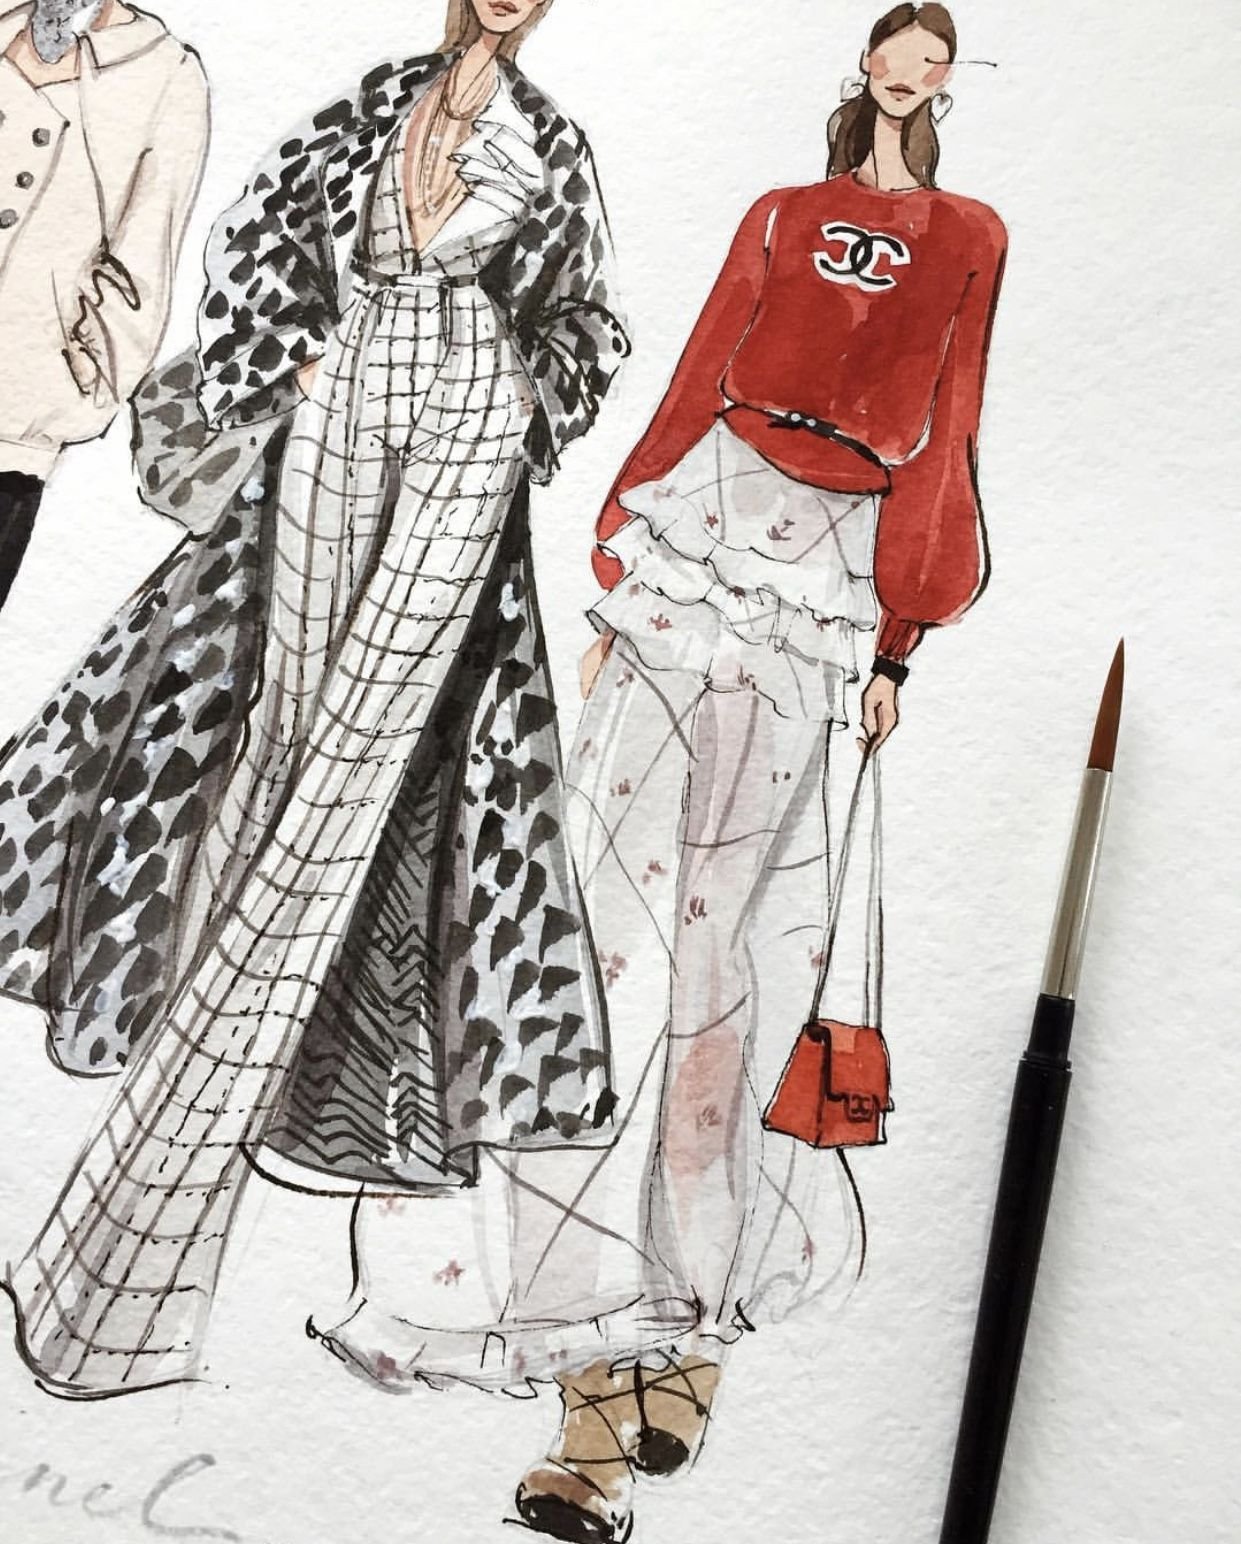 Wedding gown illustration Weddings fashion From peichiart on Instagram   Modezeichnung Zeichnungen Grafiken